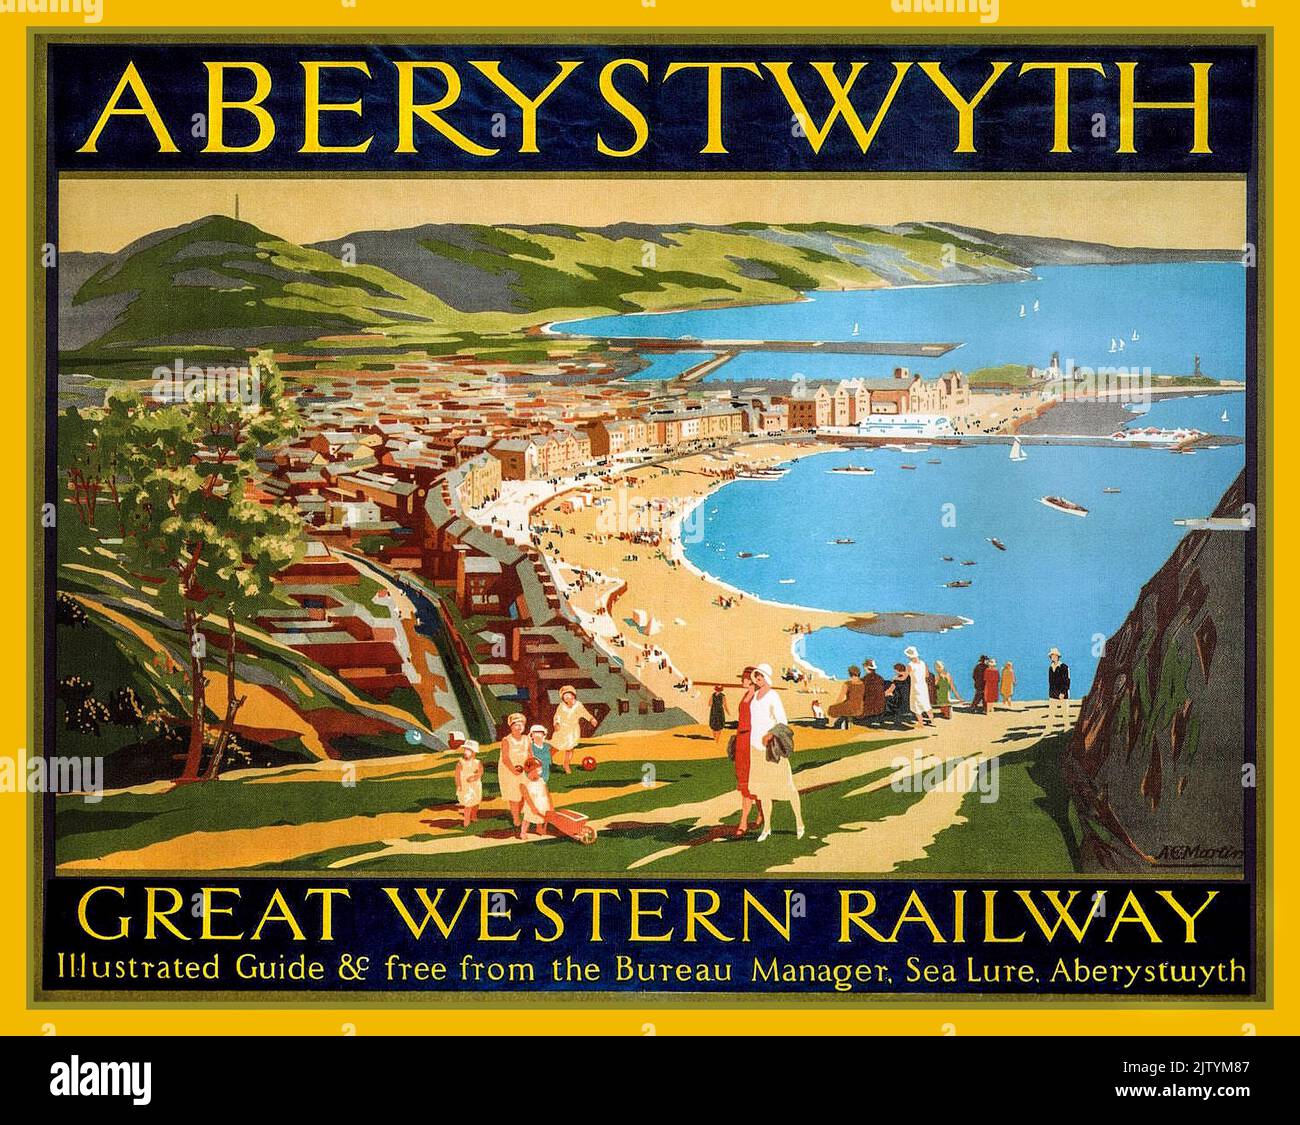 ABERYSTWYTH Vintage Great Western Railway Travel Poster 1930s für Aberystwyth Wales Großbritannien Stockfoto